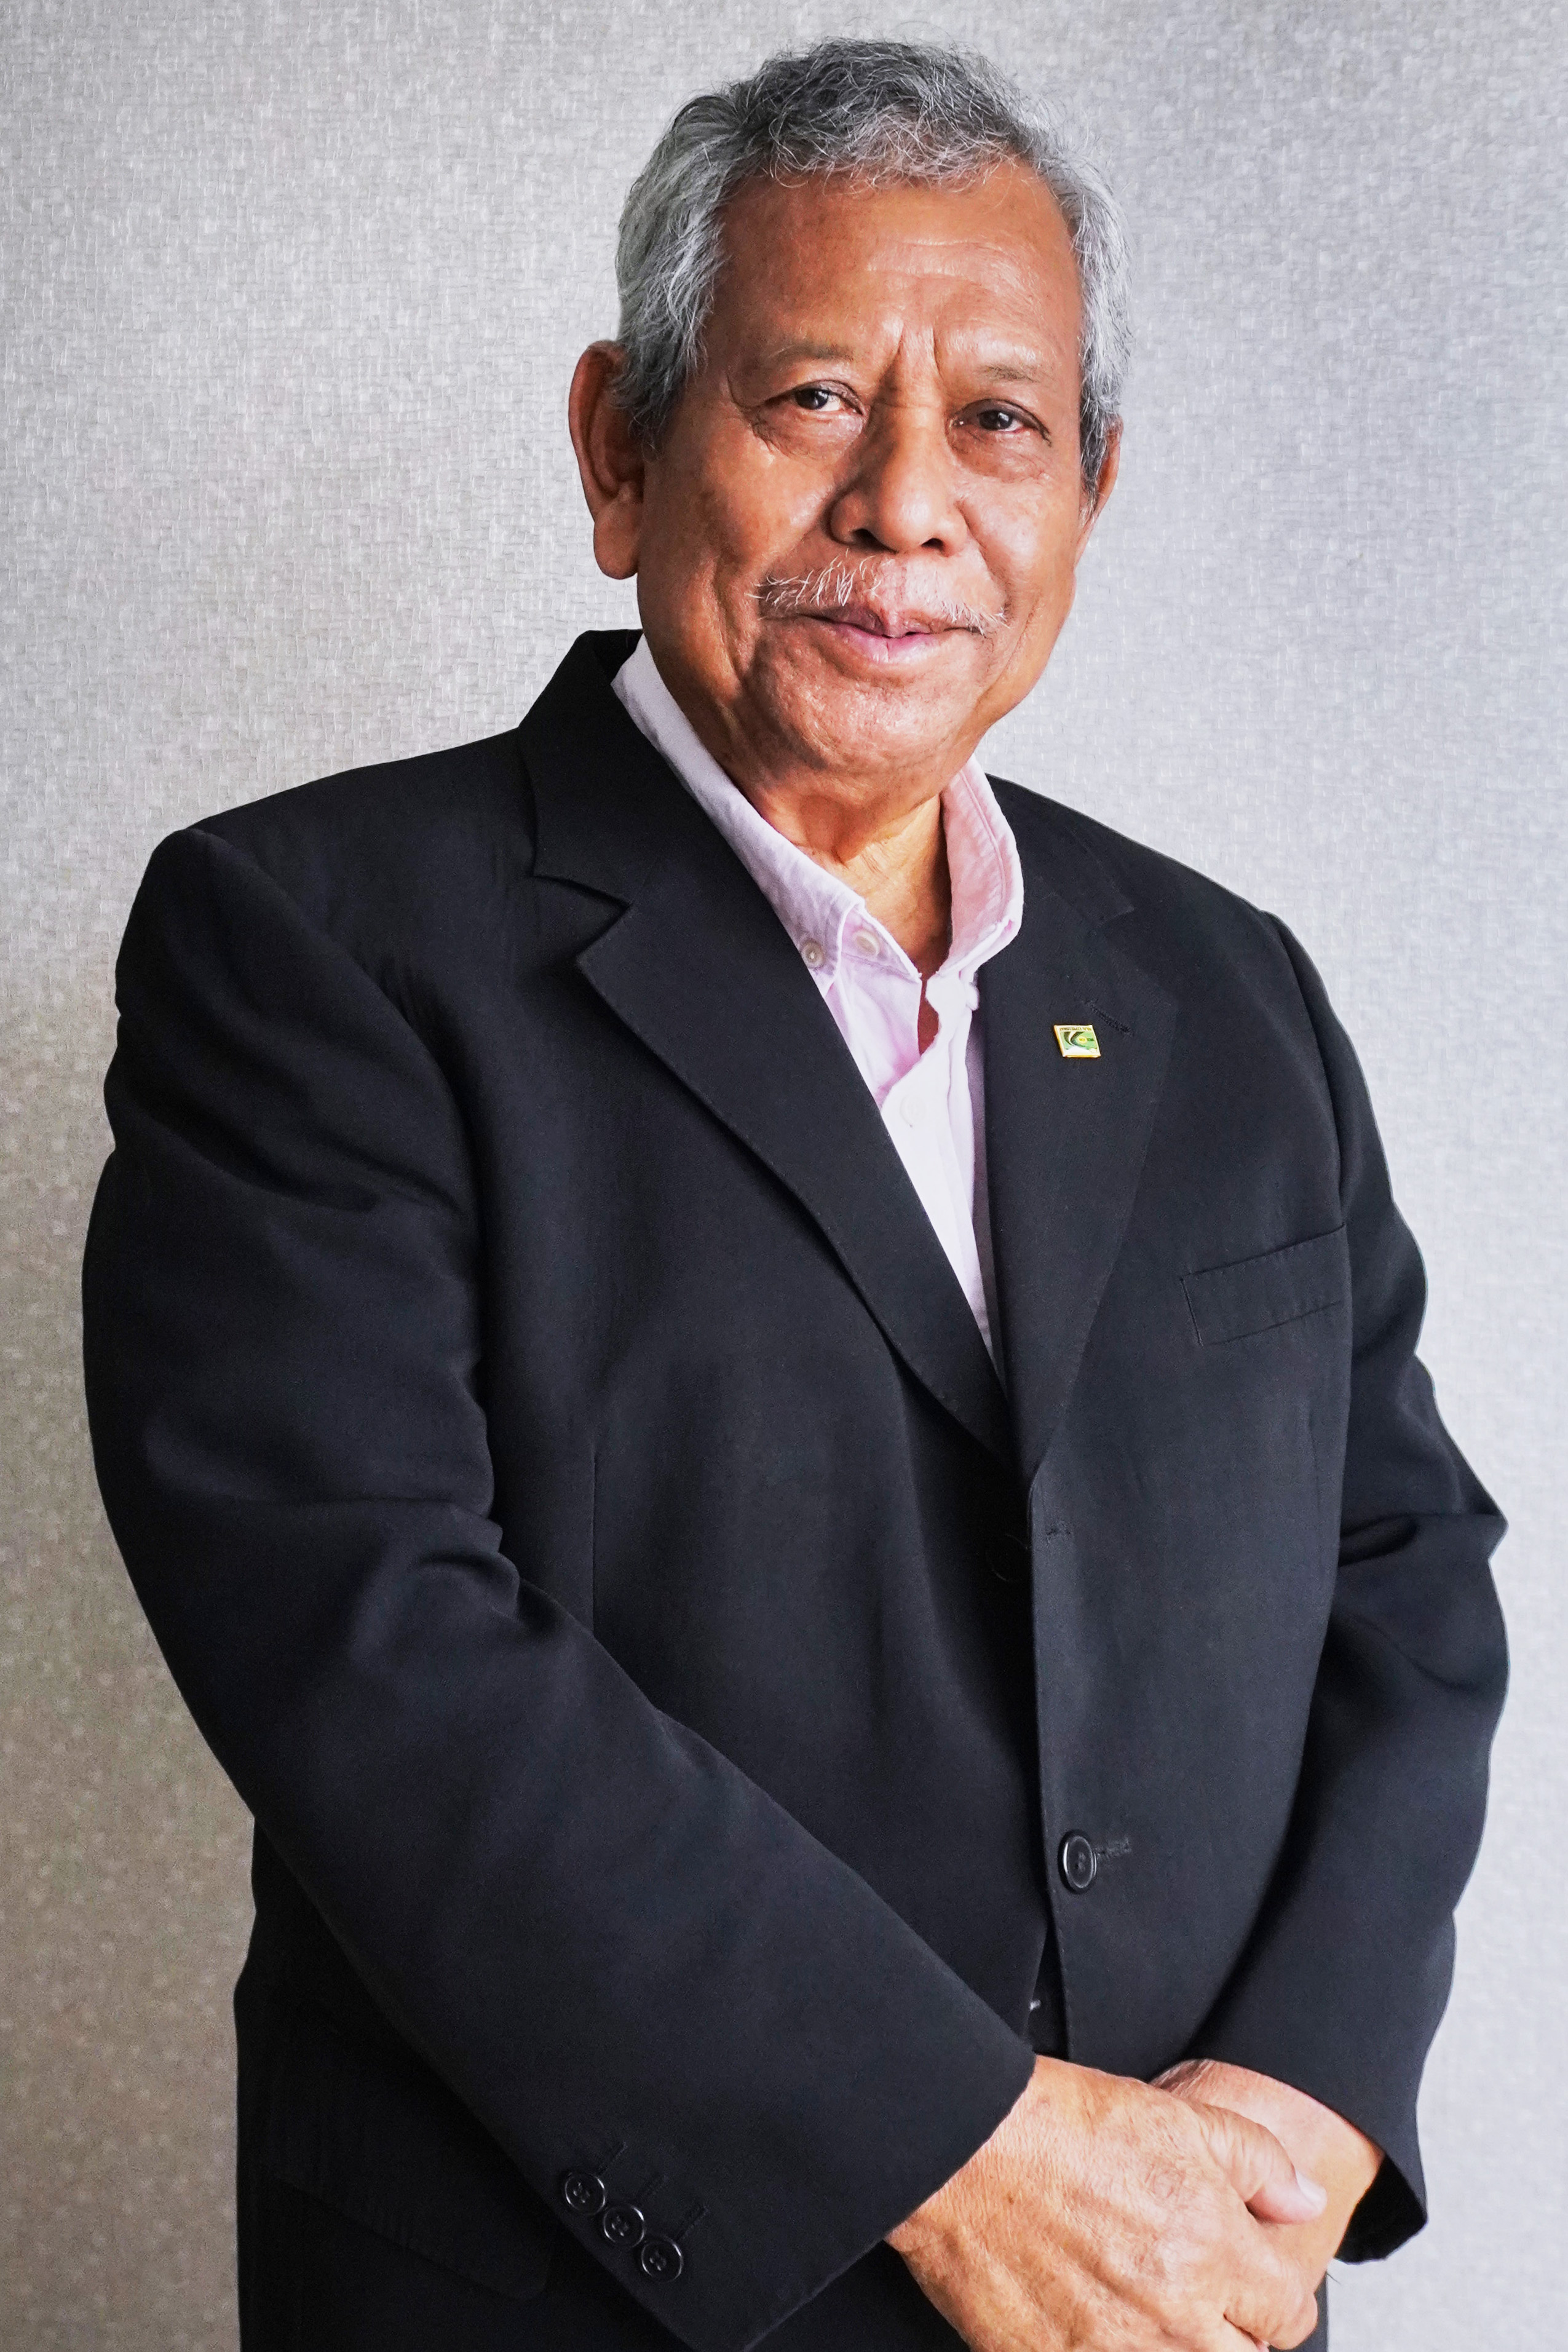 Tan Sri Dato’ Sri Dr. Samsudin Bin Hitam